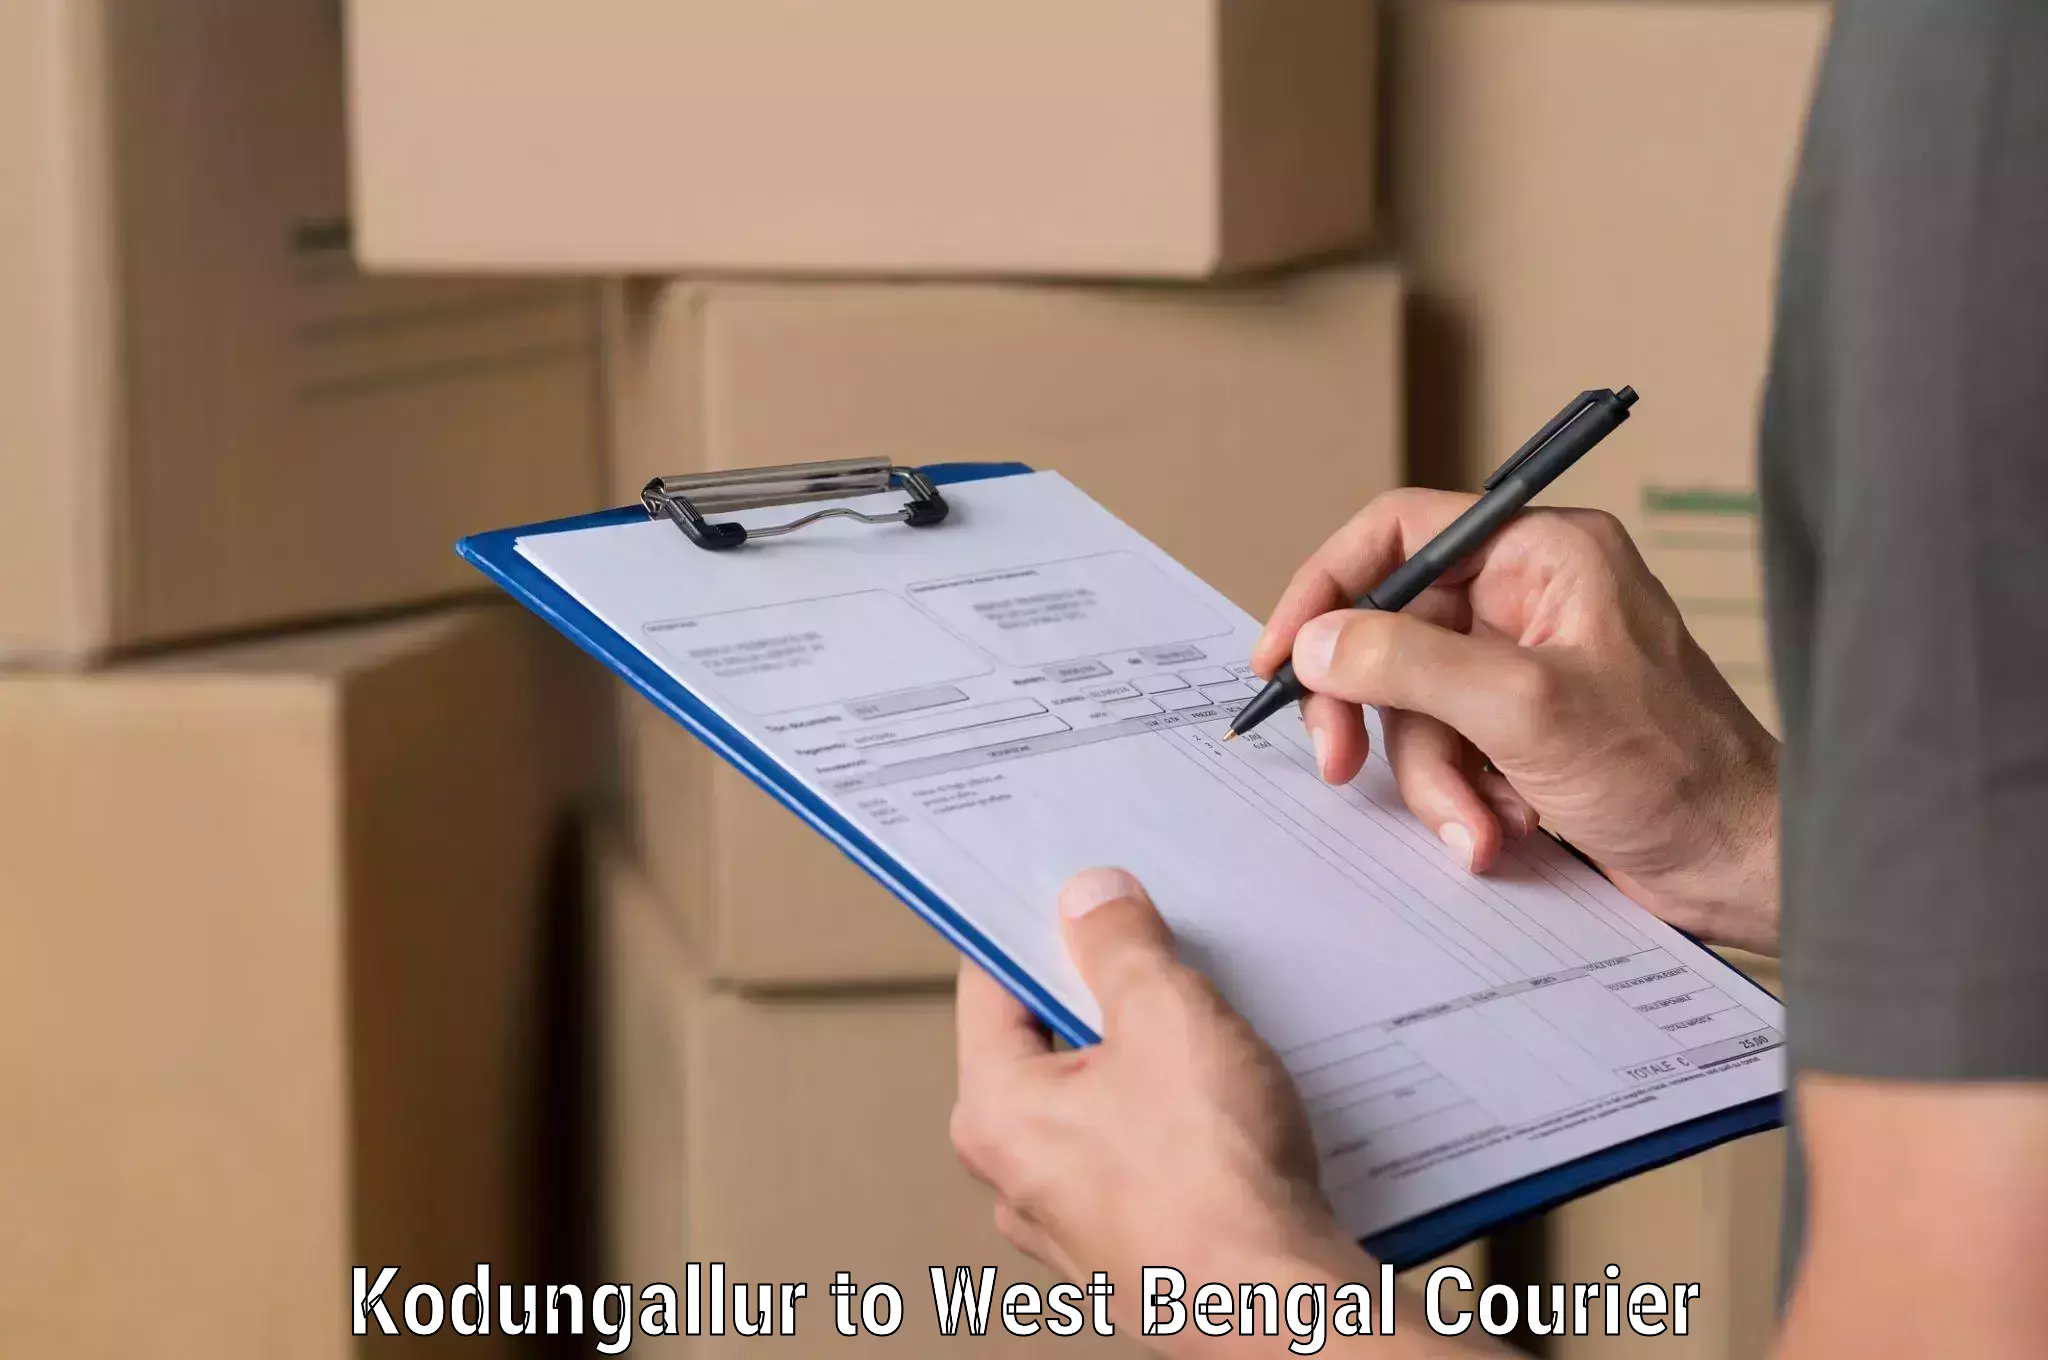 Cost-effective courier options Kodungallur to Haldia port